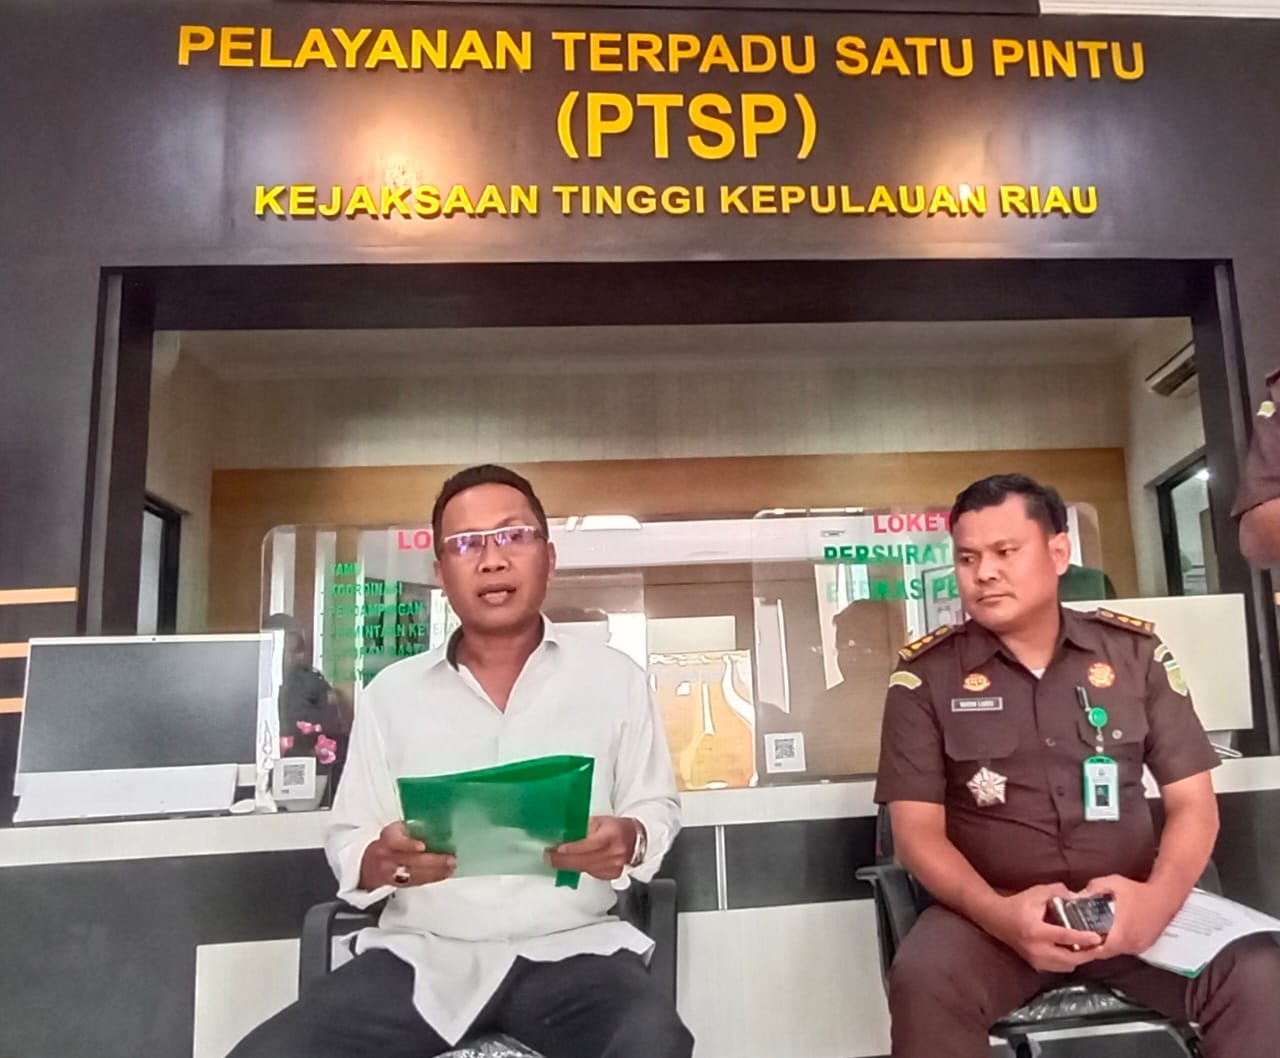 Terkait Pembangunan Jembatan Tanah Merah Kabupaten Bintan Tahun 2018 - 2019 ditingkatkan ke Penyidikan